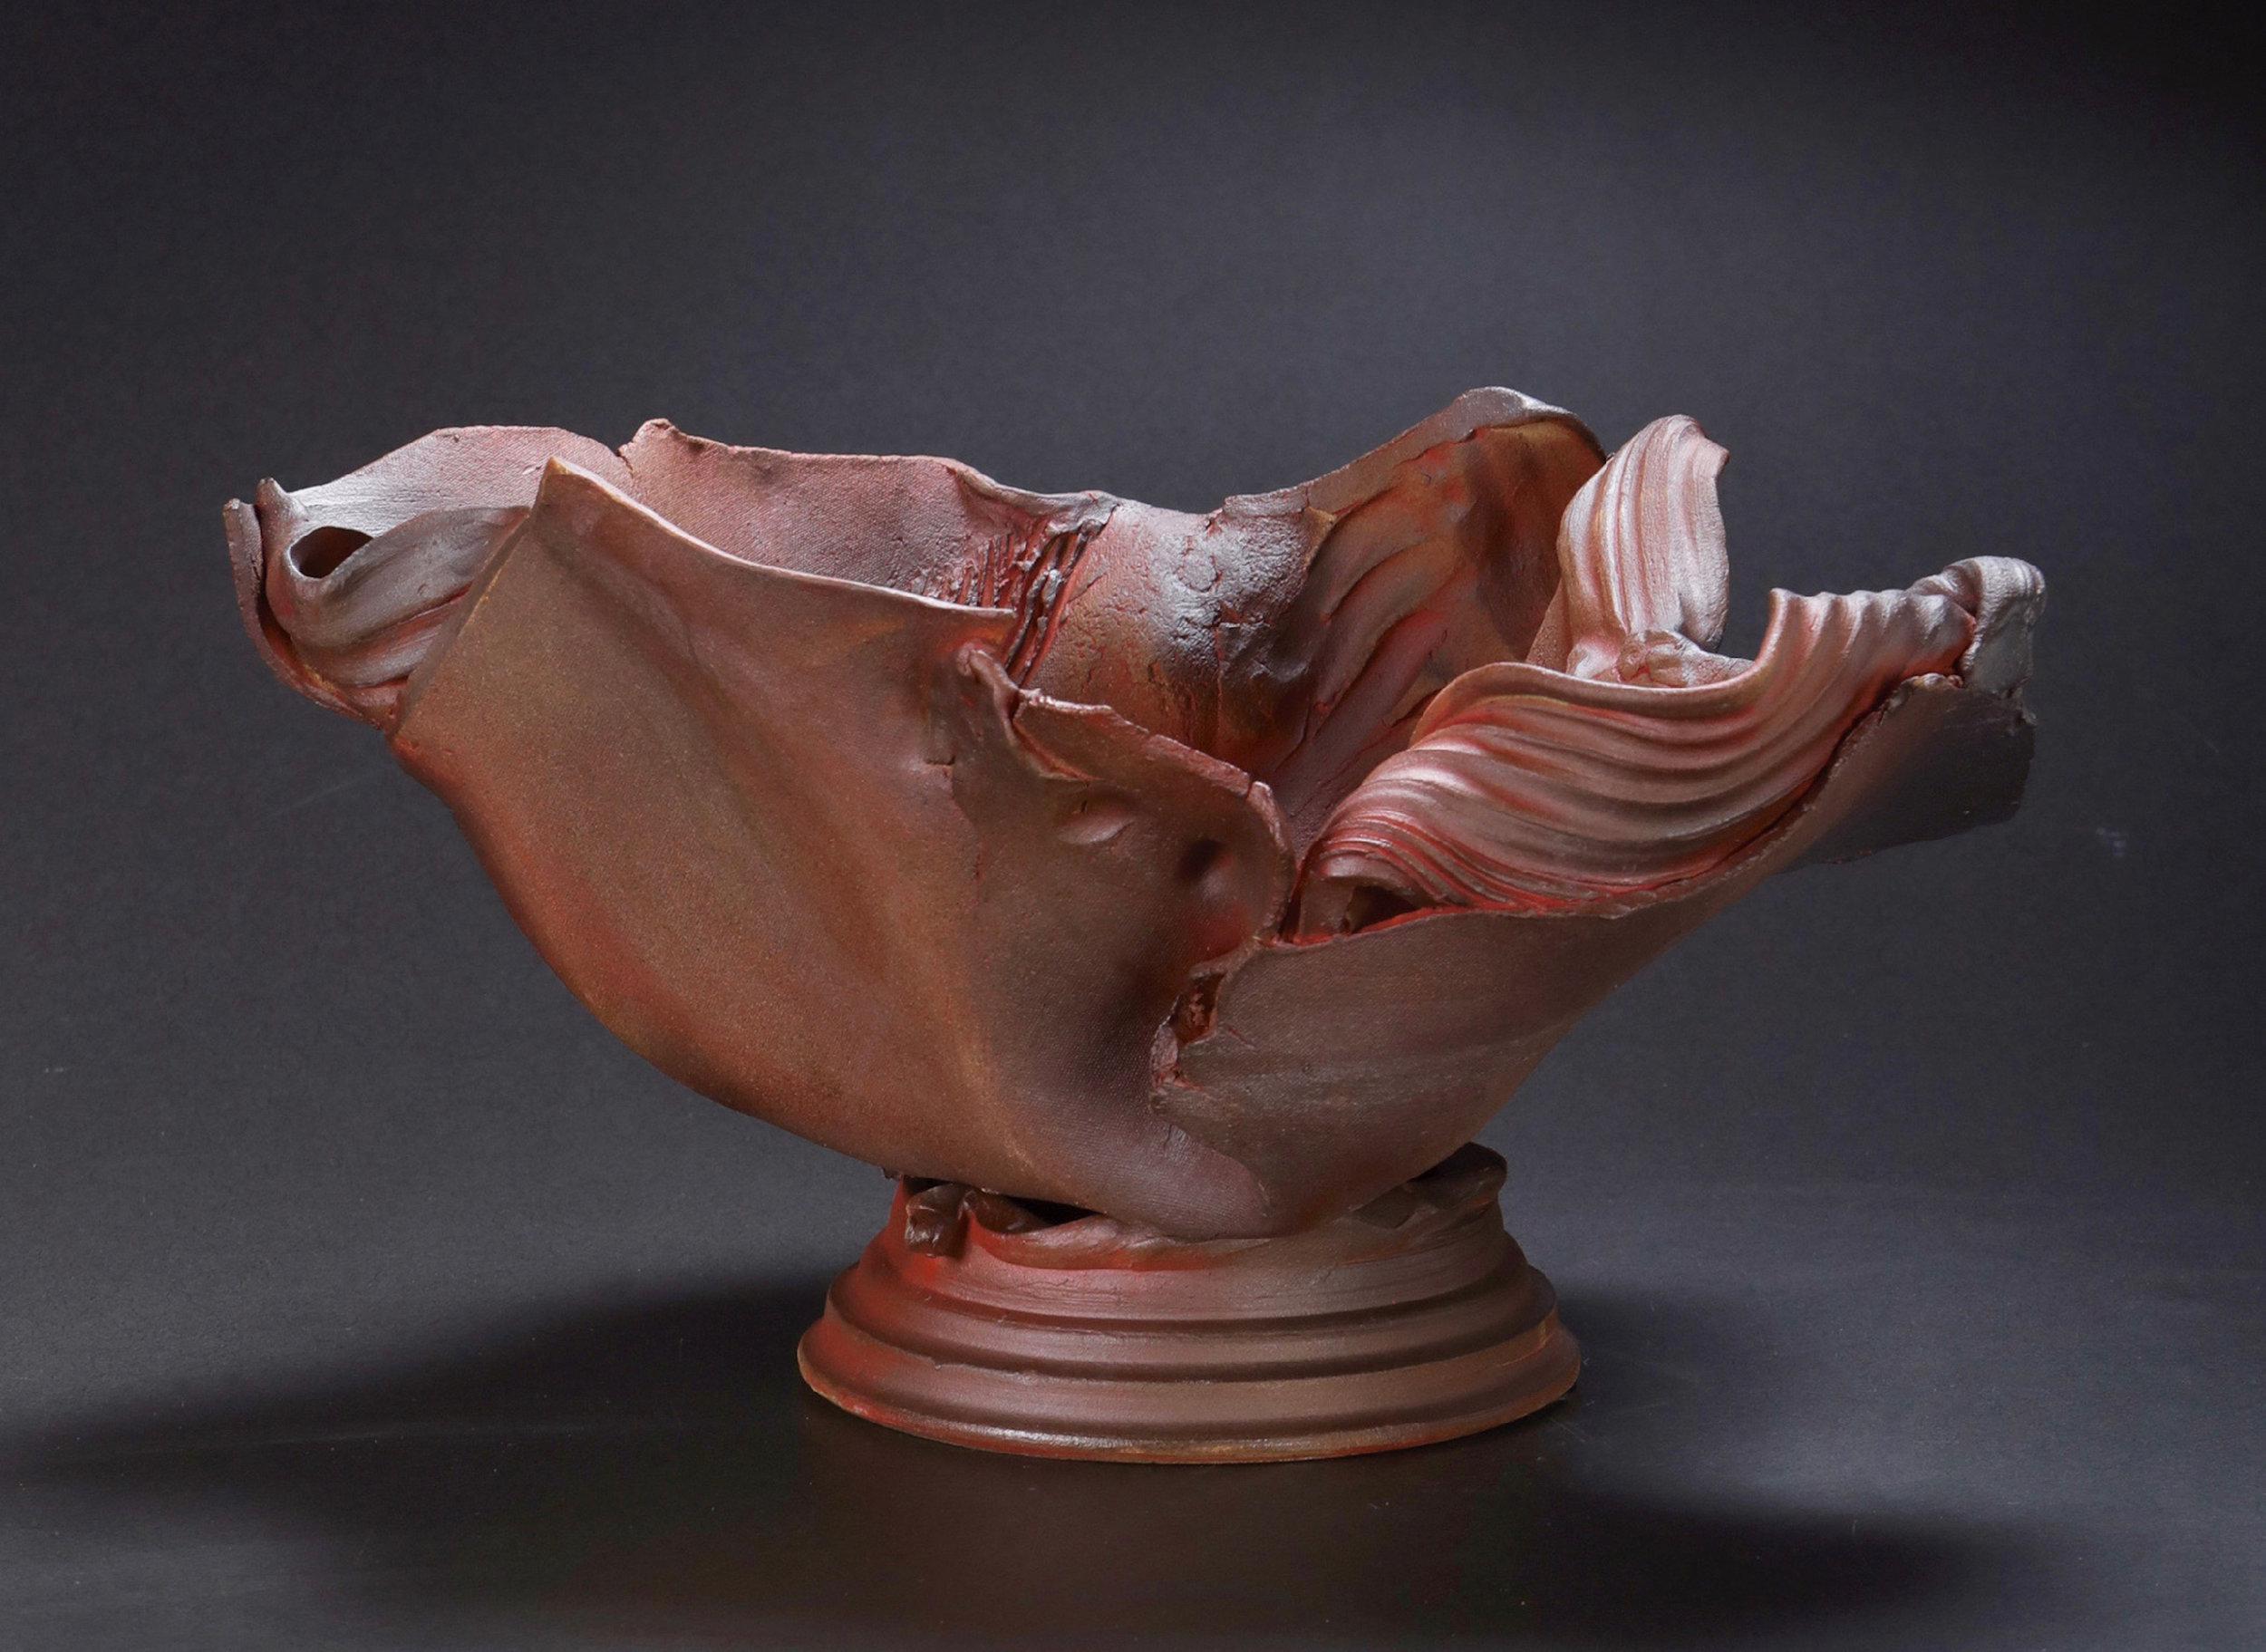  Mimi Howard,  Earth Ribbon #19 , glazed stoneware, 20x15x10 